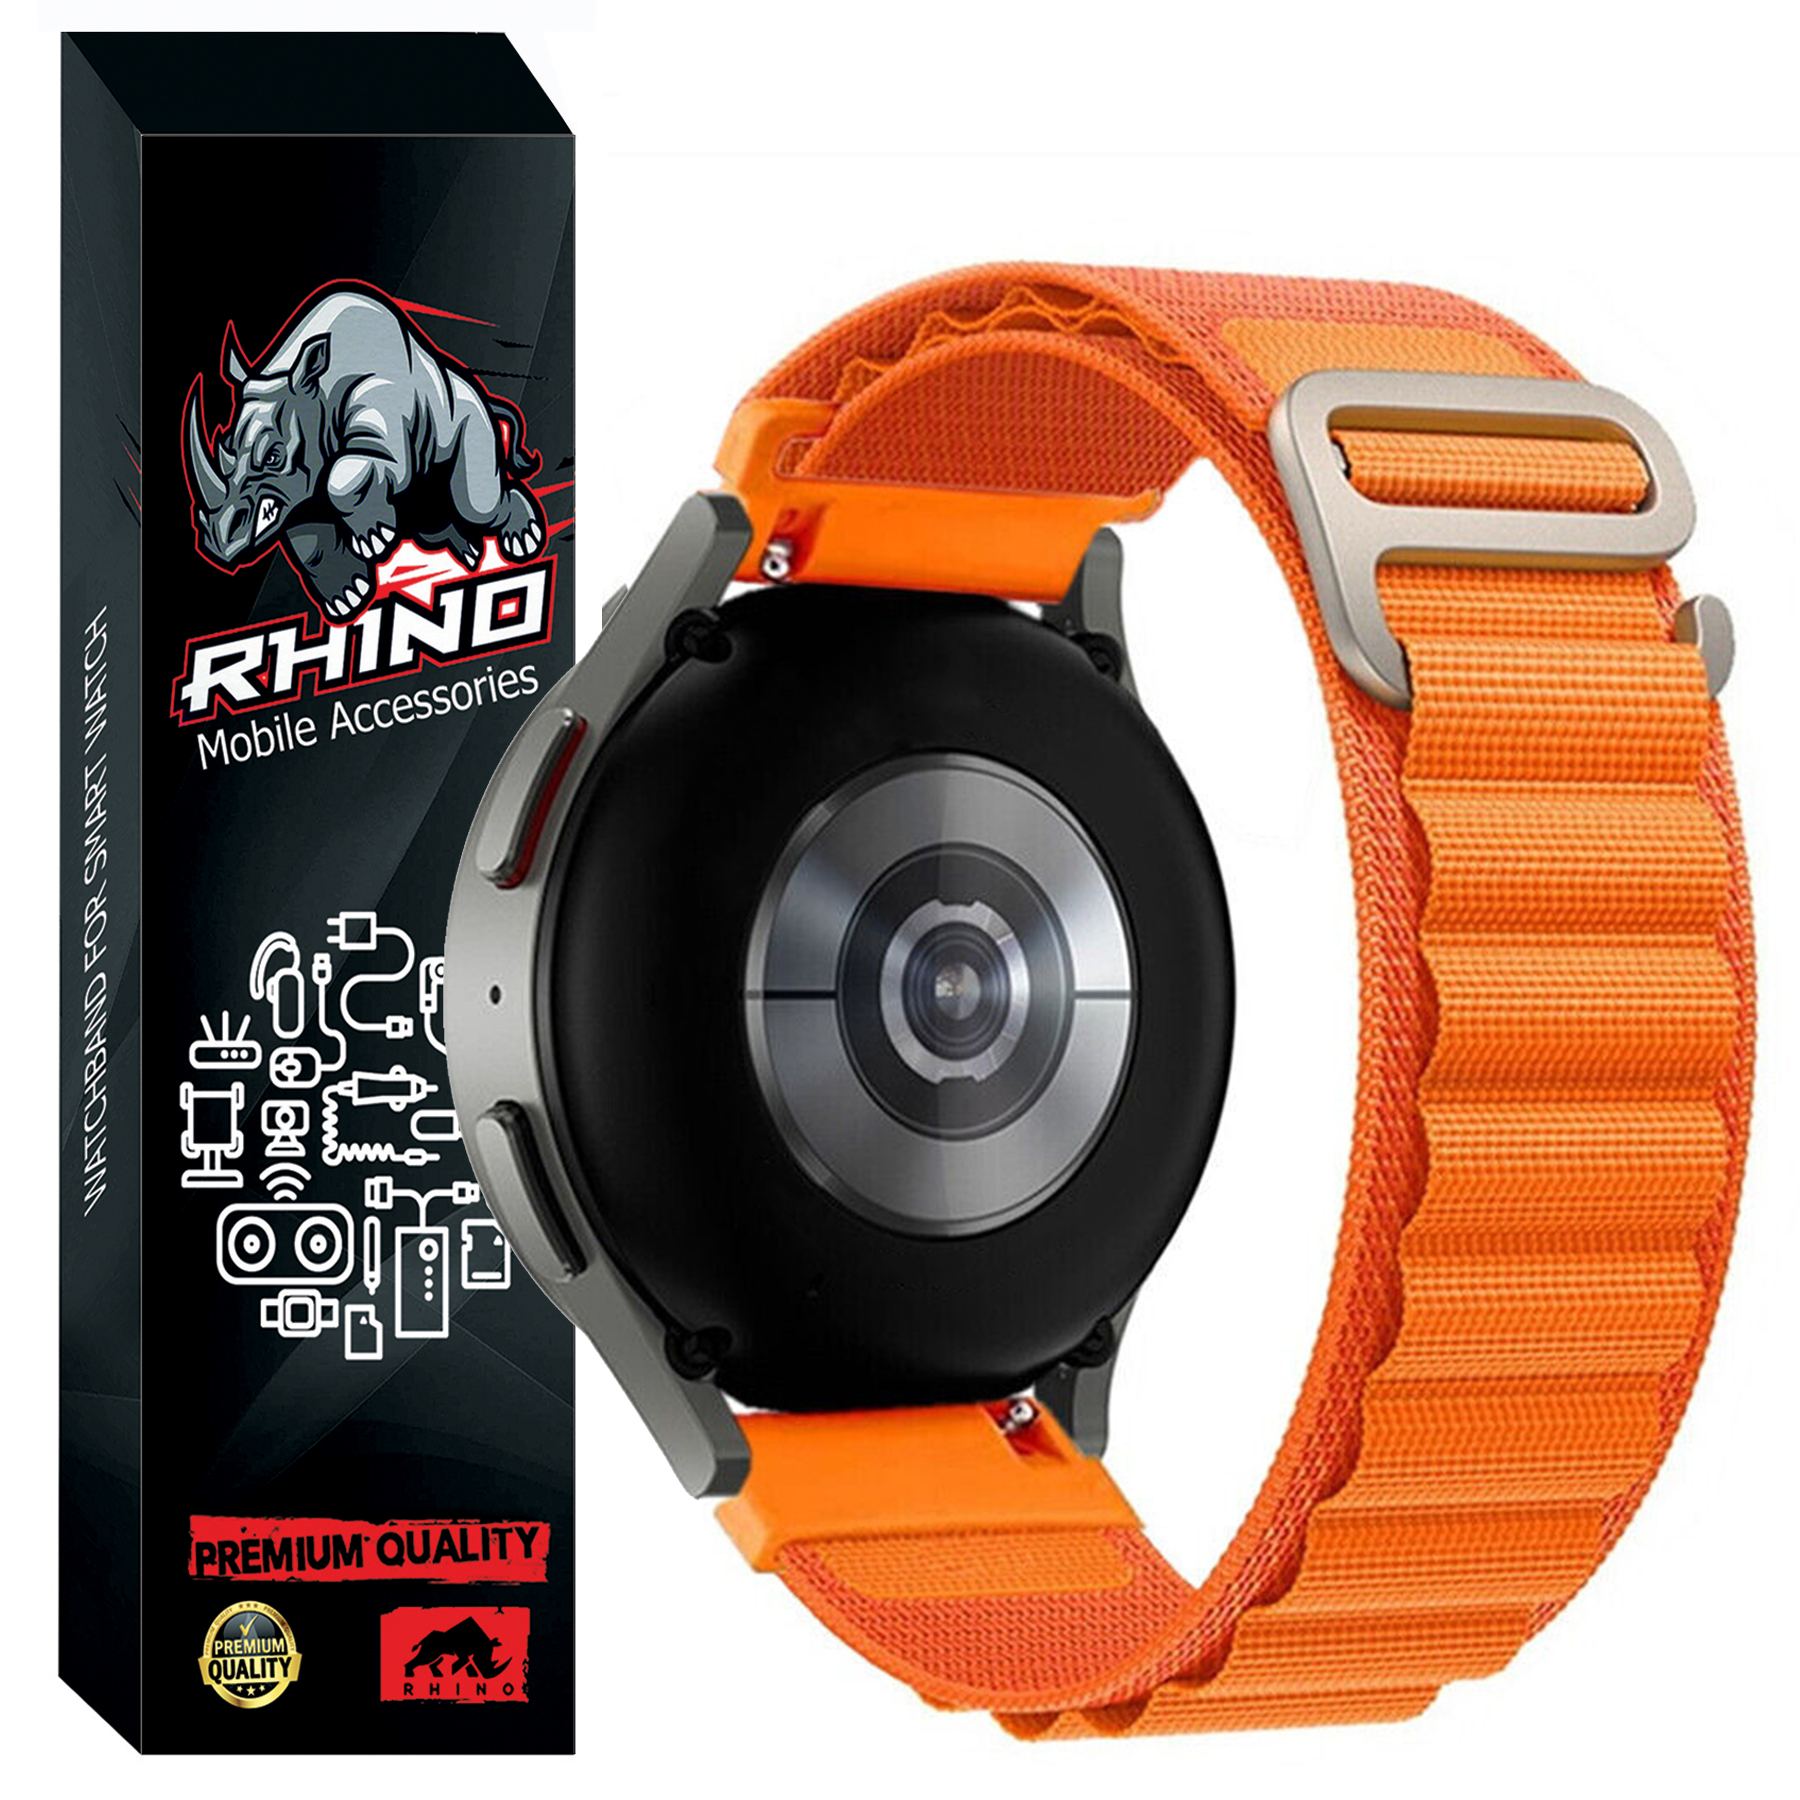 بند راینو مدل Alpine مناسب برای ساعت هوشمند سامسونگ Galaxy Watch Active / Active 2 / Watch 4 / Watch 4 Classic / Watch 5 / Watch 5 Pro / Watch 6 / Watch 6 Classic / Watch 3 41mm